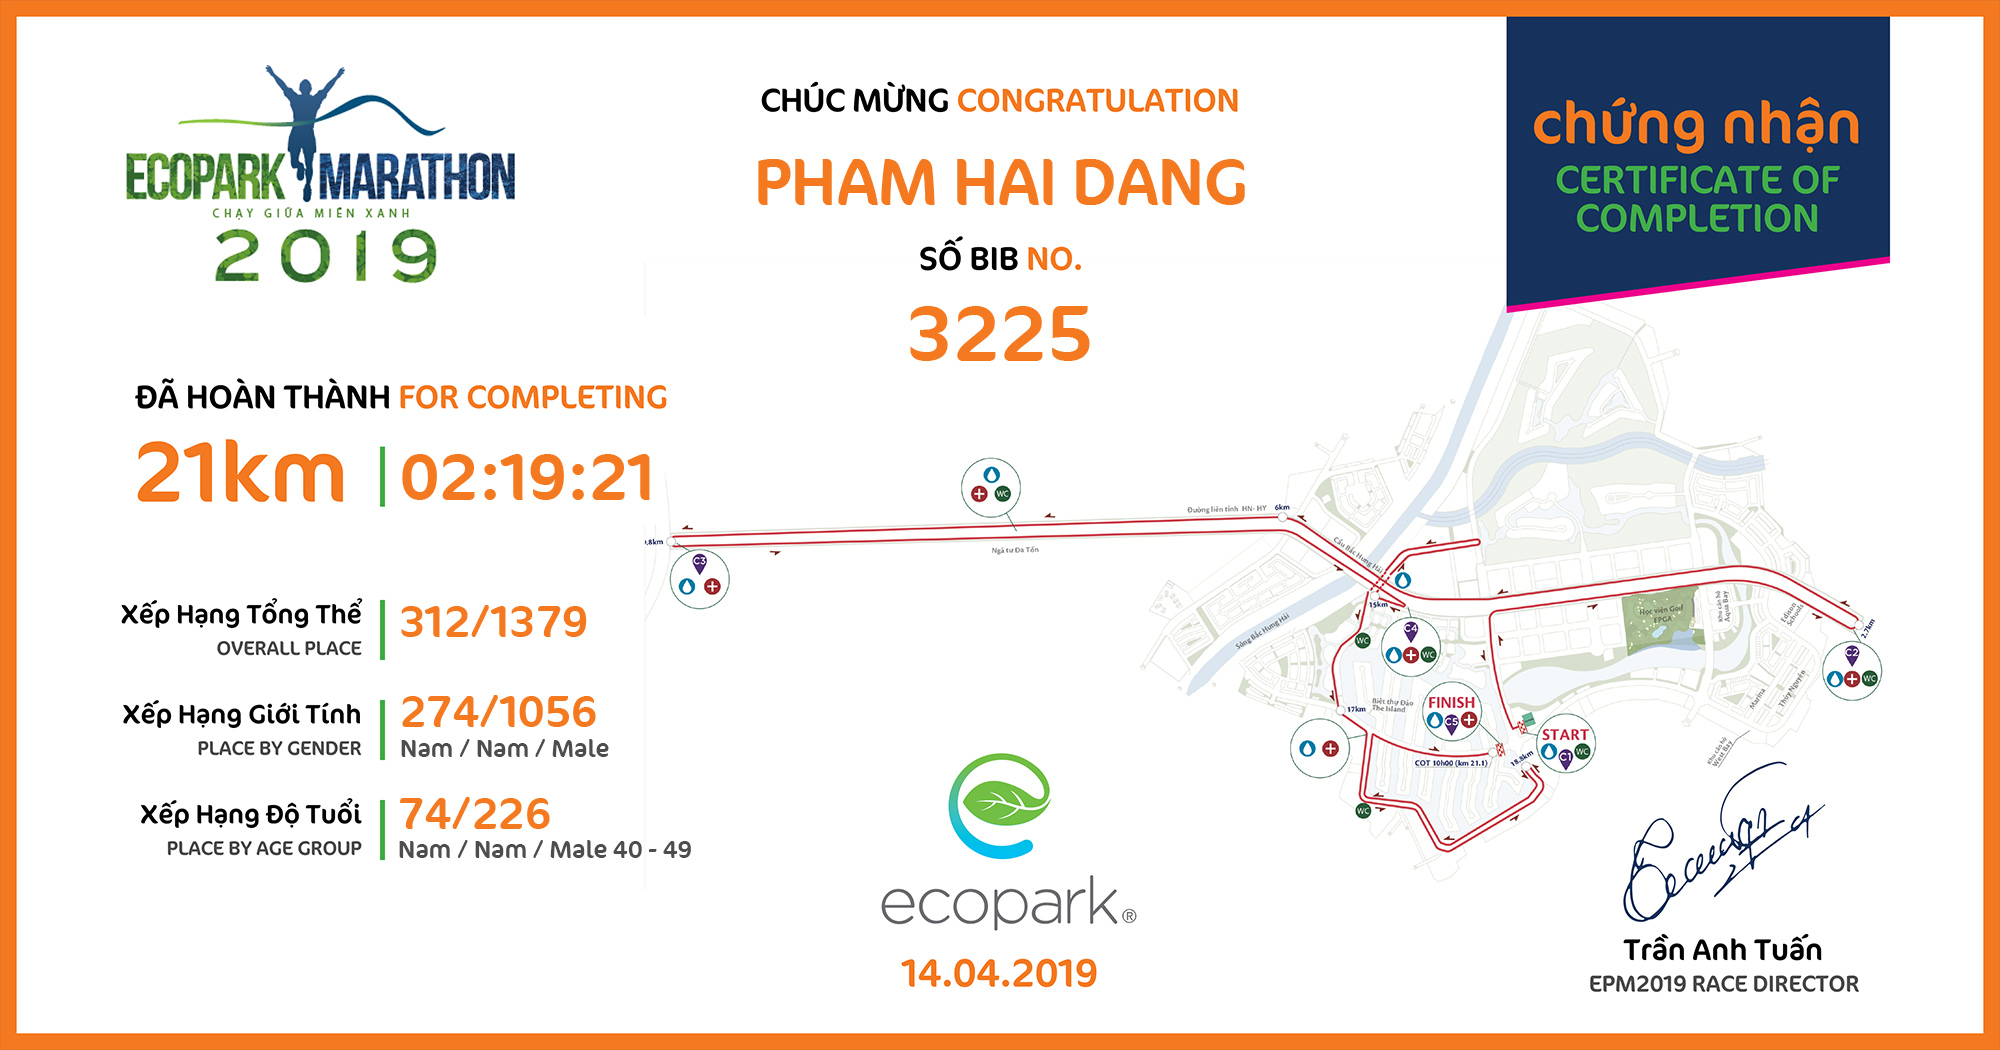 3225 - Pham Hai Dang